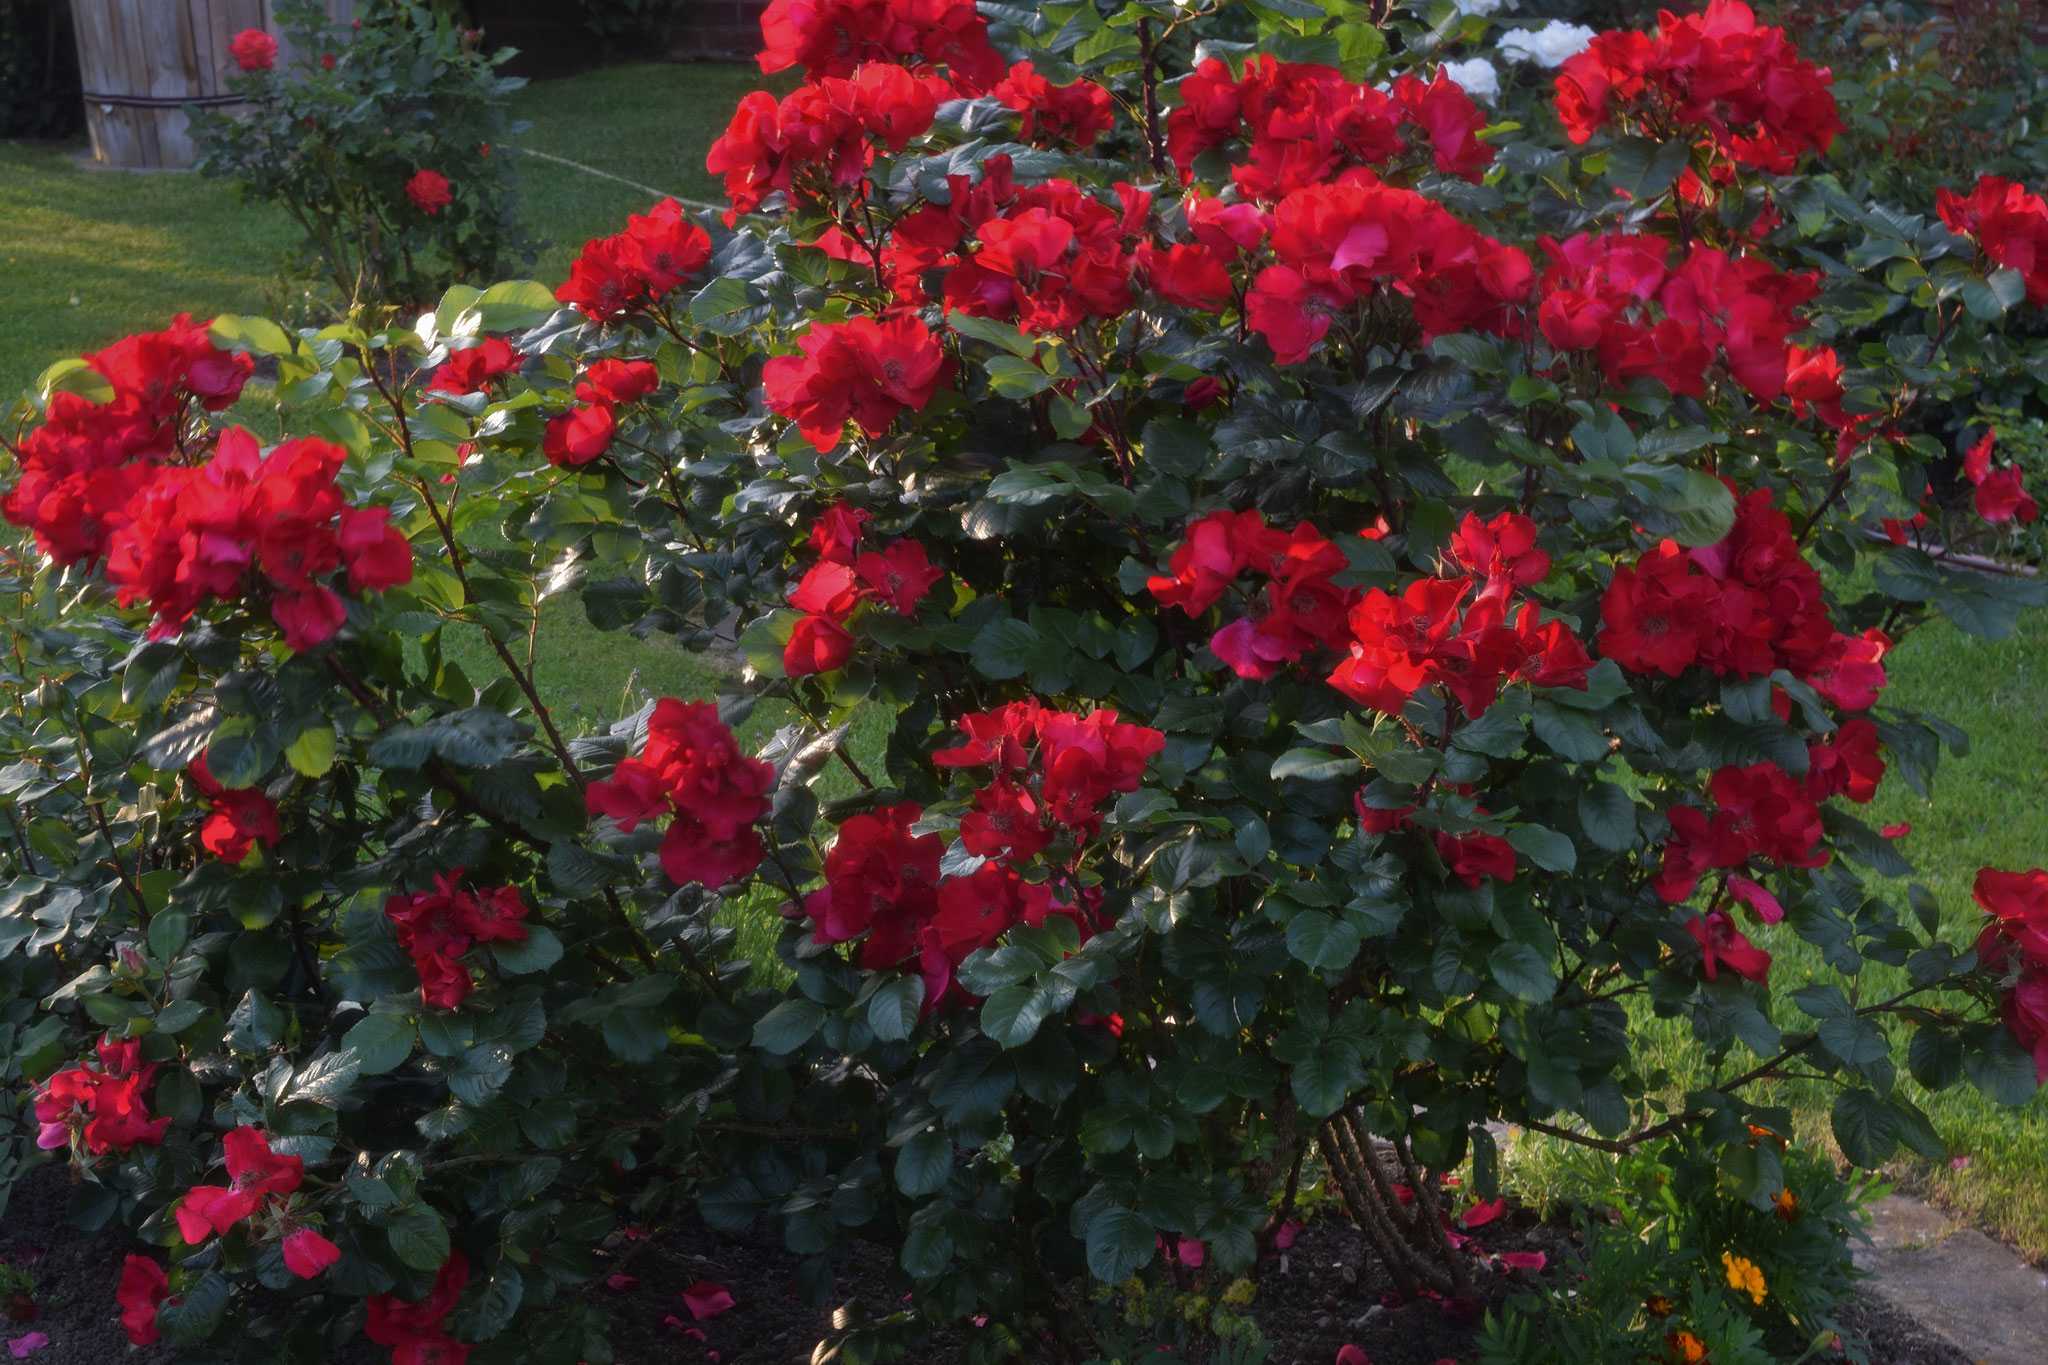 Роза робуста эффектная и зимостойкая | сад и огород